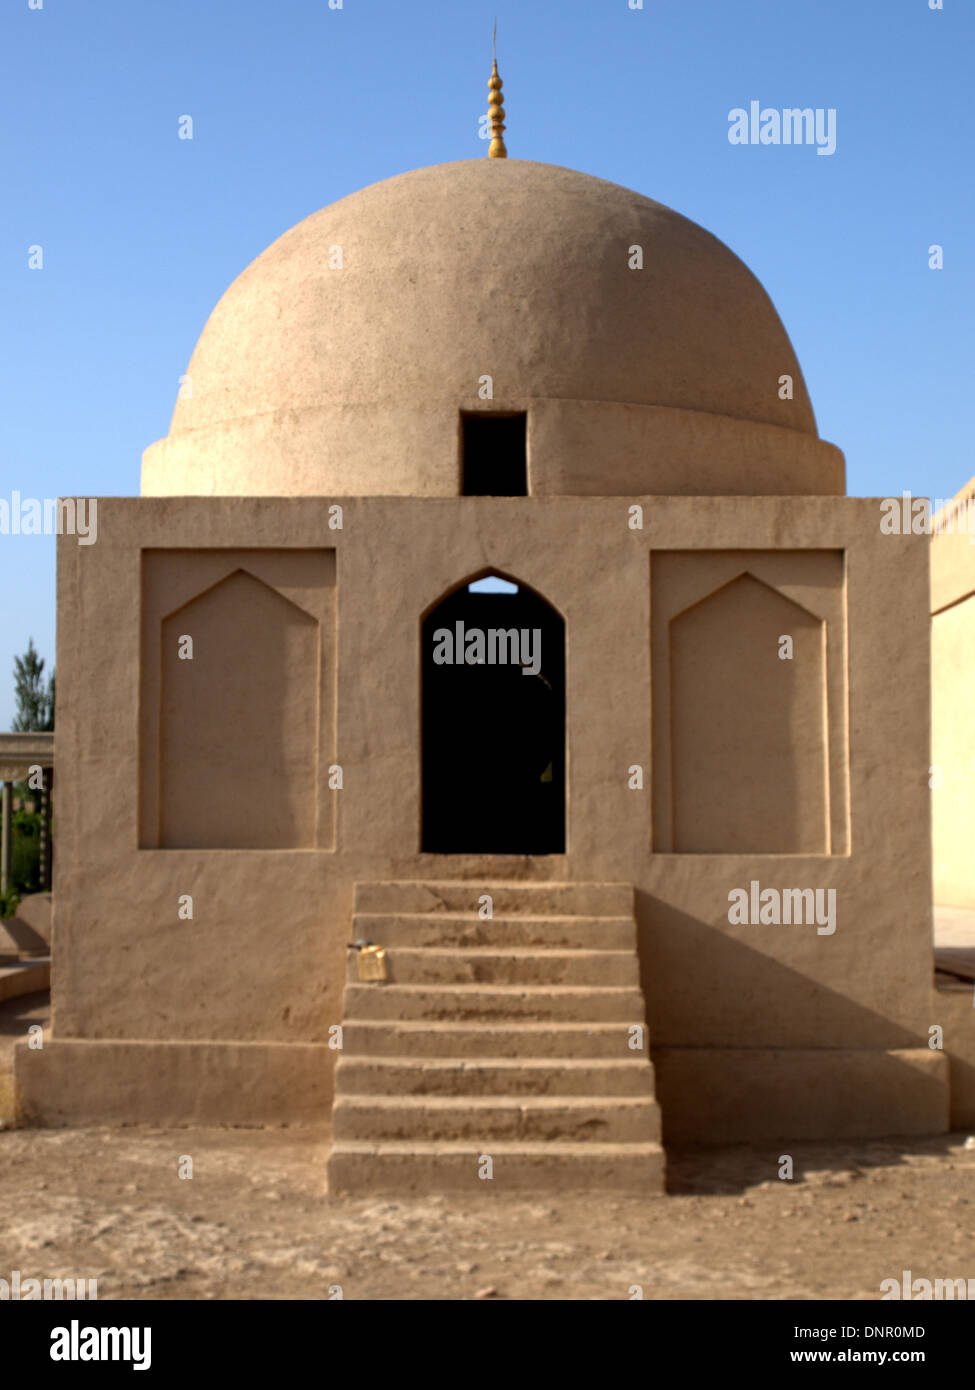 L'Emin Minaret, ou ta d'Imin, près de la mosquée de ouïghour Turpan (Turfan), Xinjiang, Chine. C'est le plus haut minaret en Chine, bu Banque D'Images